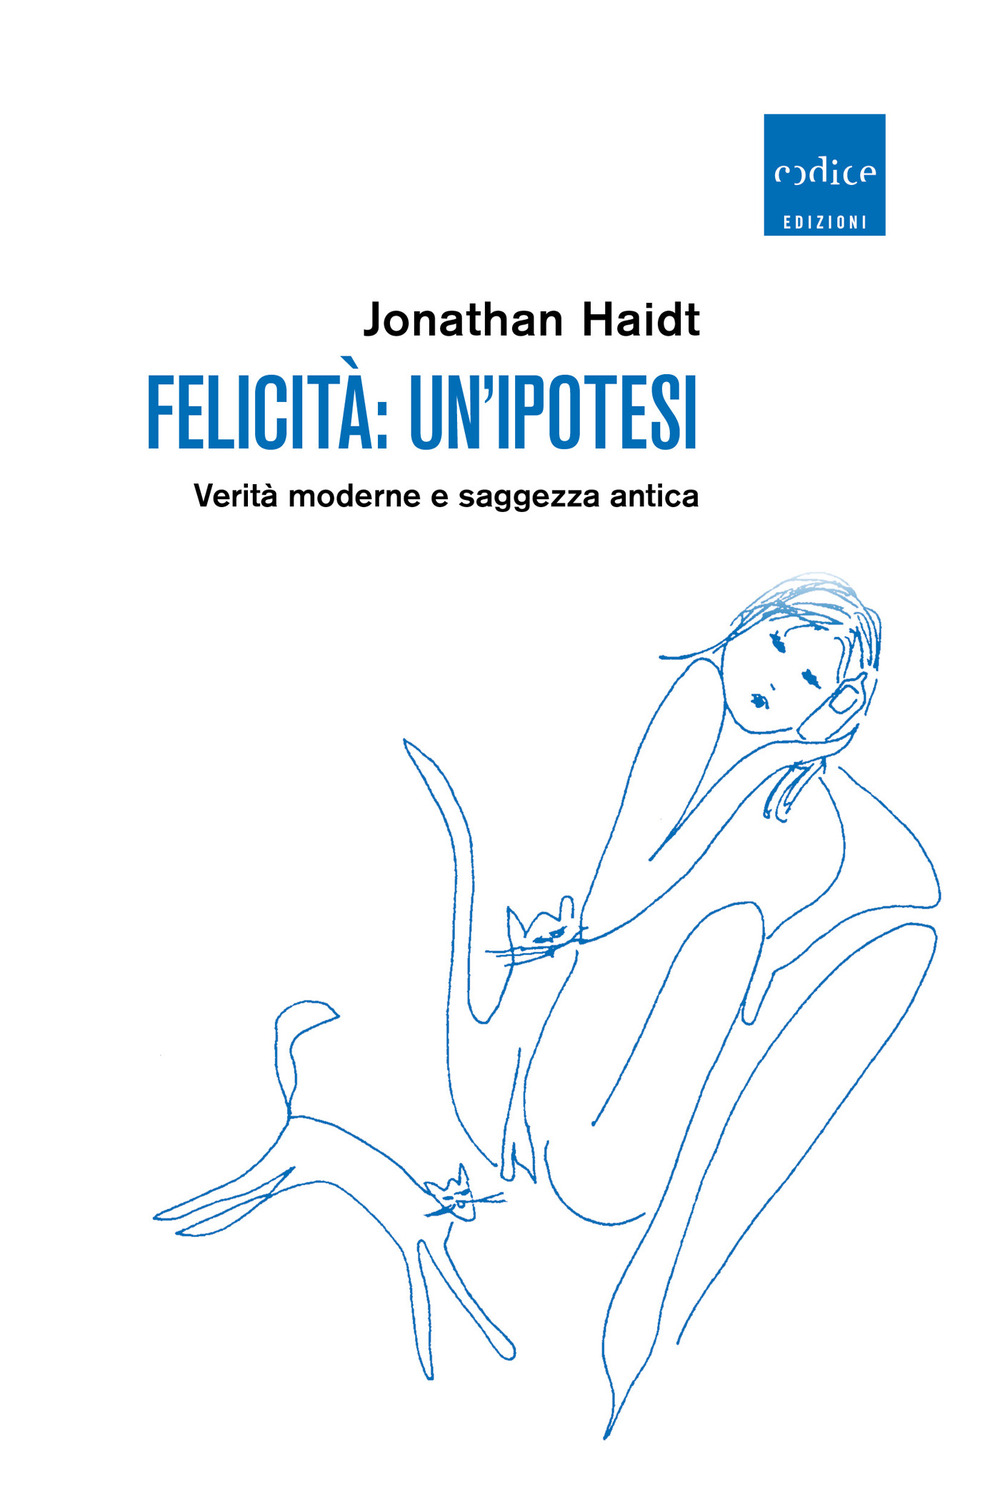 Libri Jonathan Haidt - Felicita: Un'ipotesi. Verita Moderne E Saggezza Antica NUOVO SIGILLATO, EDIZIONE DEL 23/09/2020 SUBITO DISPONIBILE